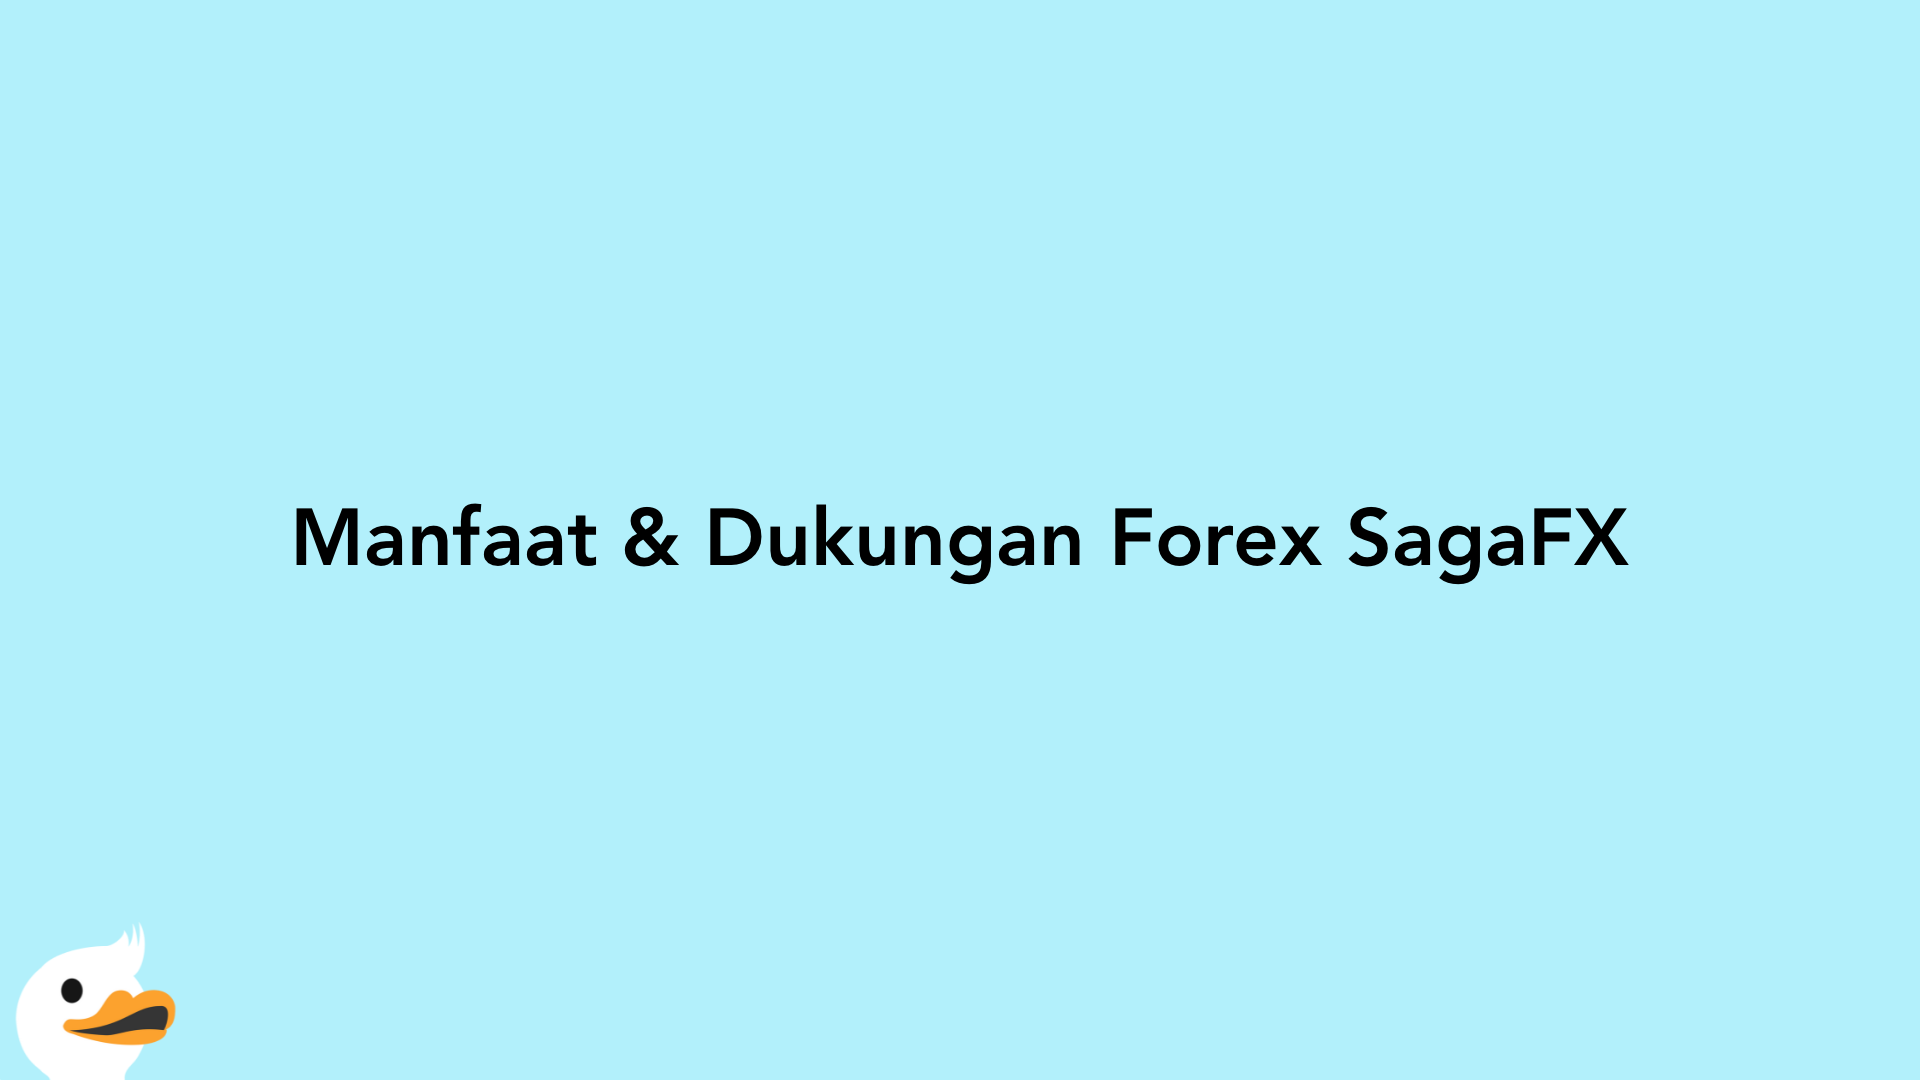 Manfaat & Dukungan Forex SagaFX